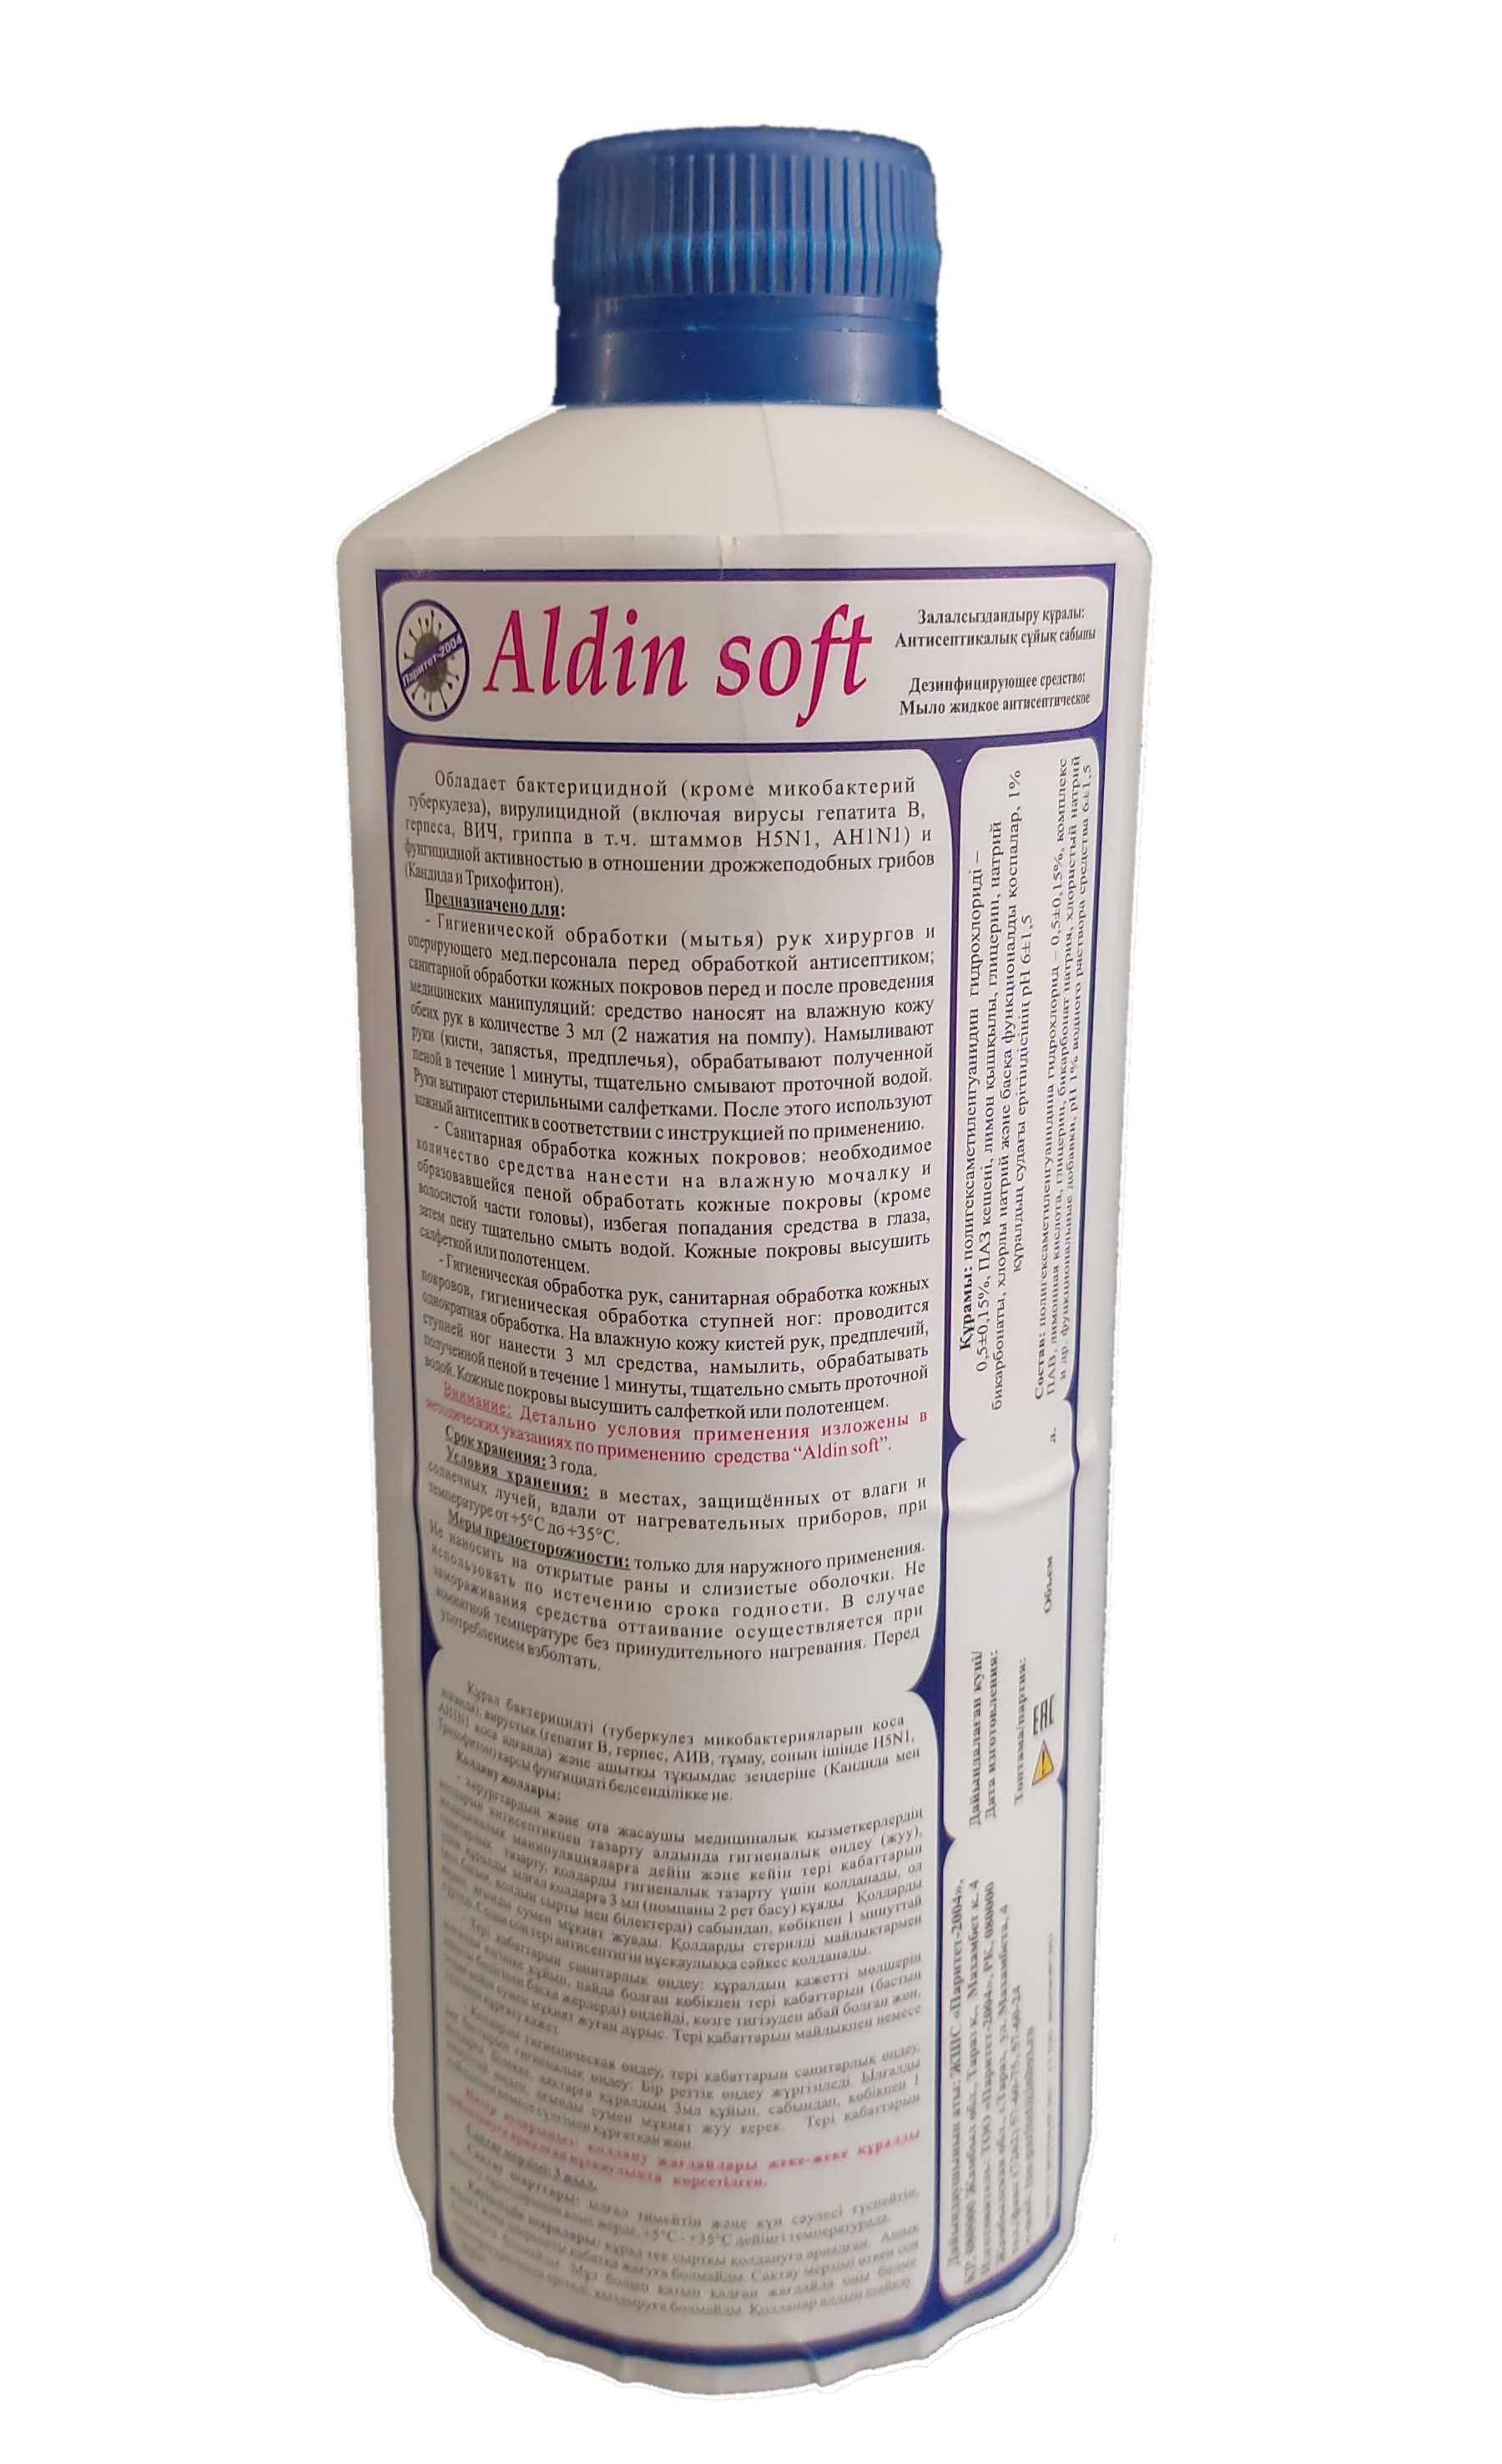 Жидкое антисептическое мыло "AldinSoft"